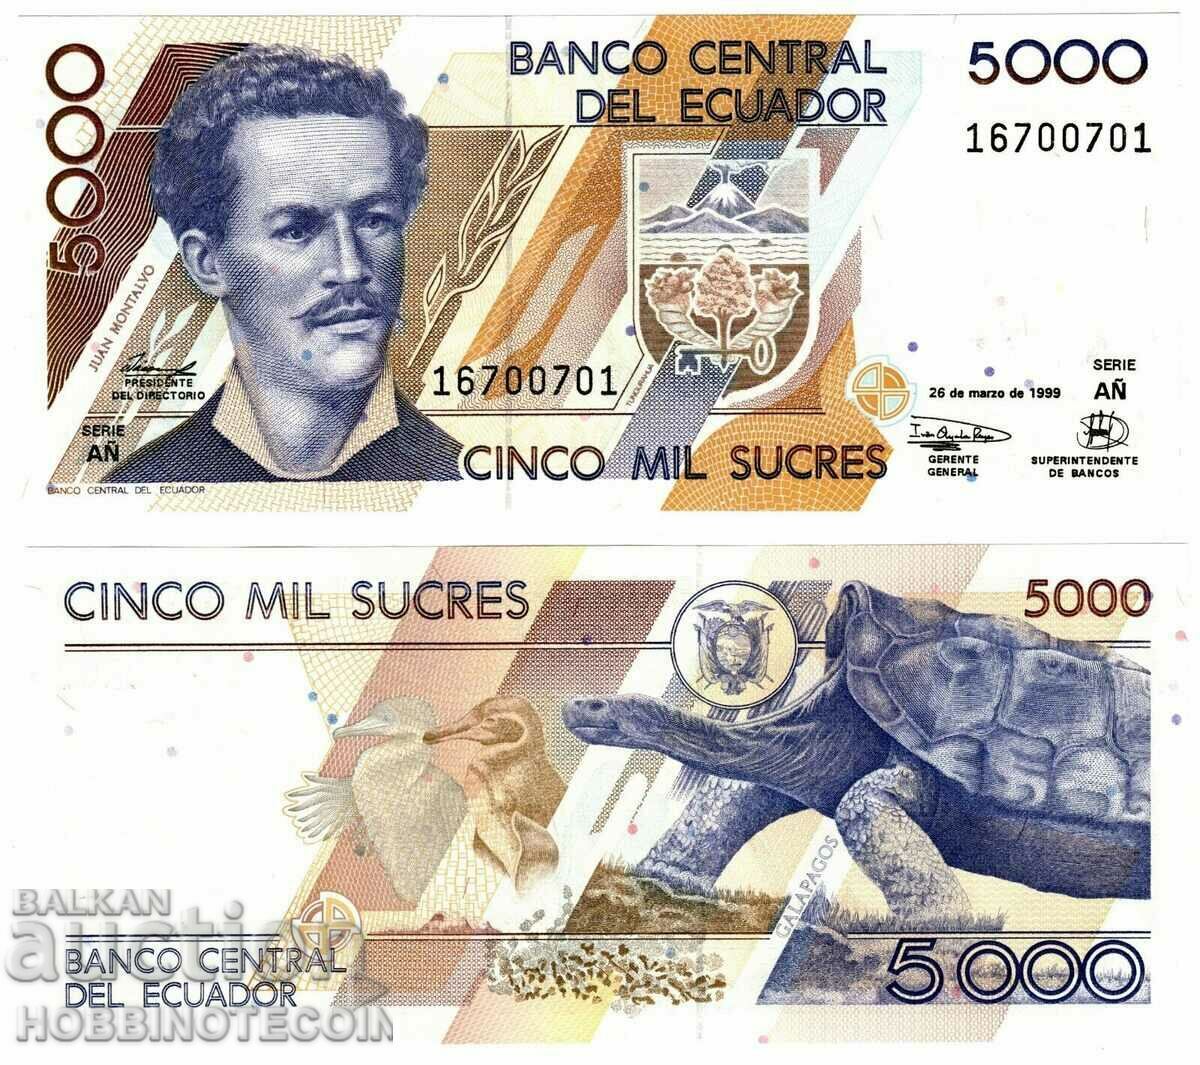 ECUADOR ECUADOR 5000 5000 issue issue 26.03.1999 NEW UNC